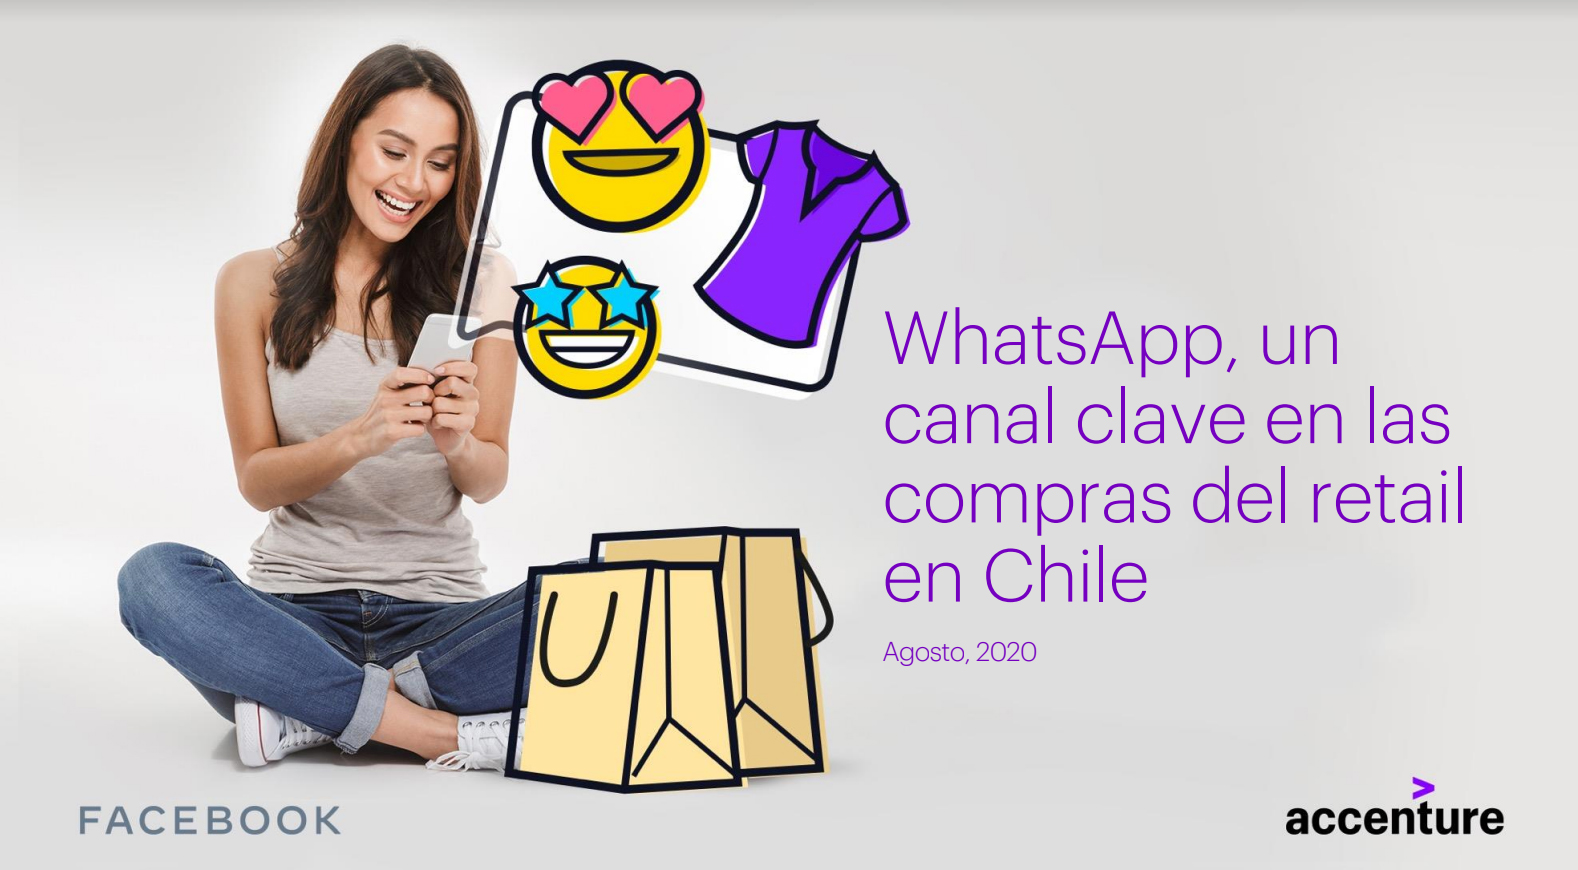 Accenture revela que 83% de los consumidores chilenos utiliza WhatsApp como parte de su proceso de compra